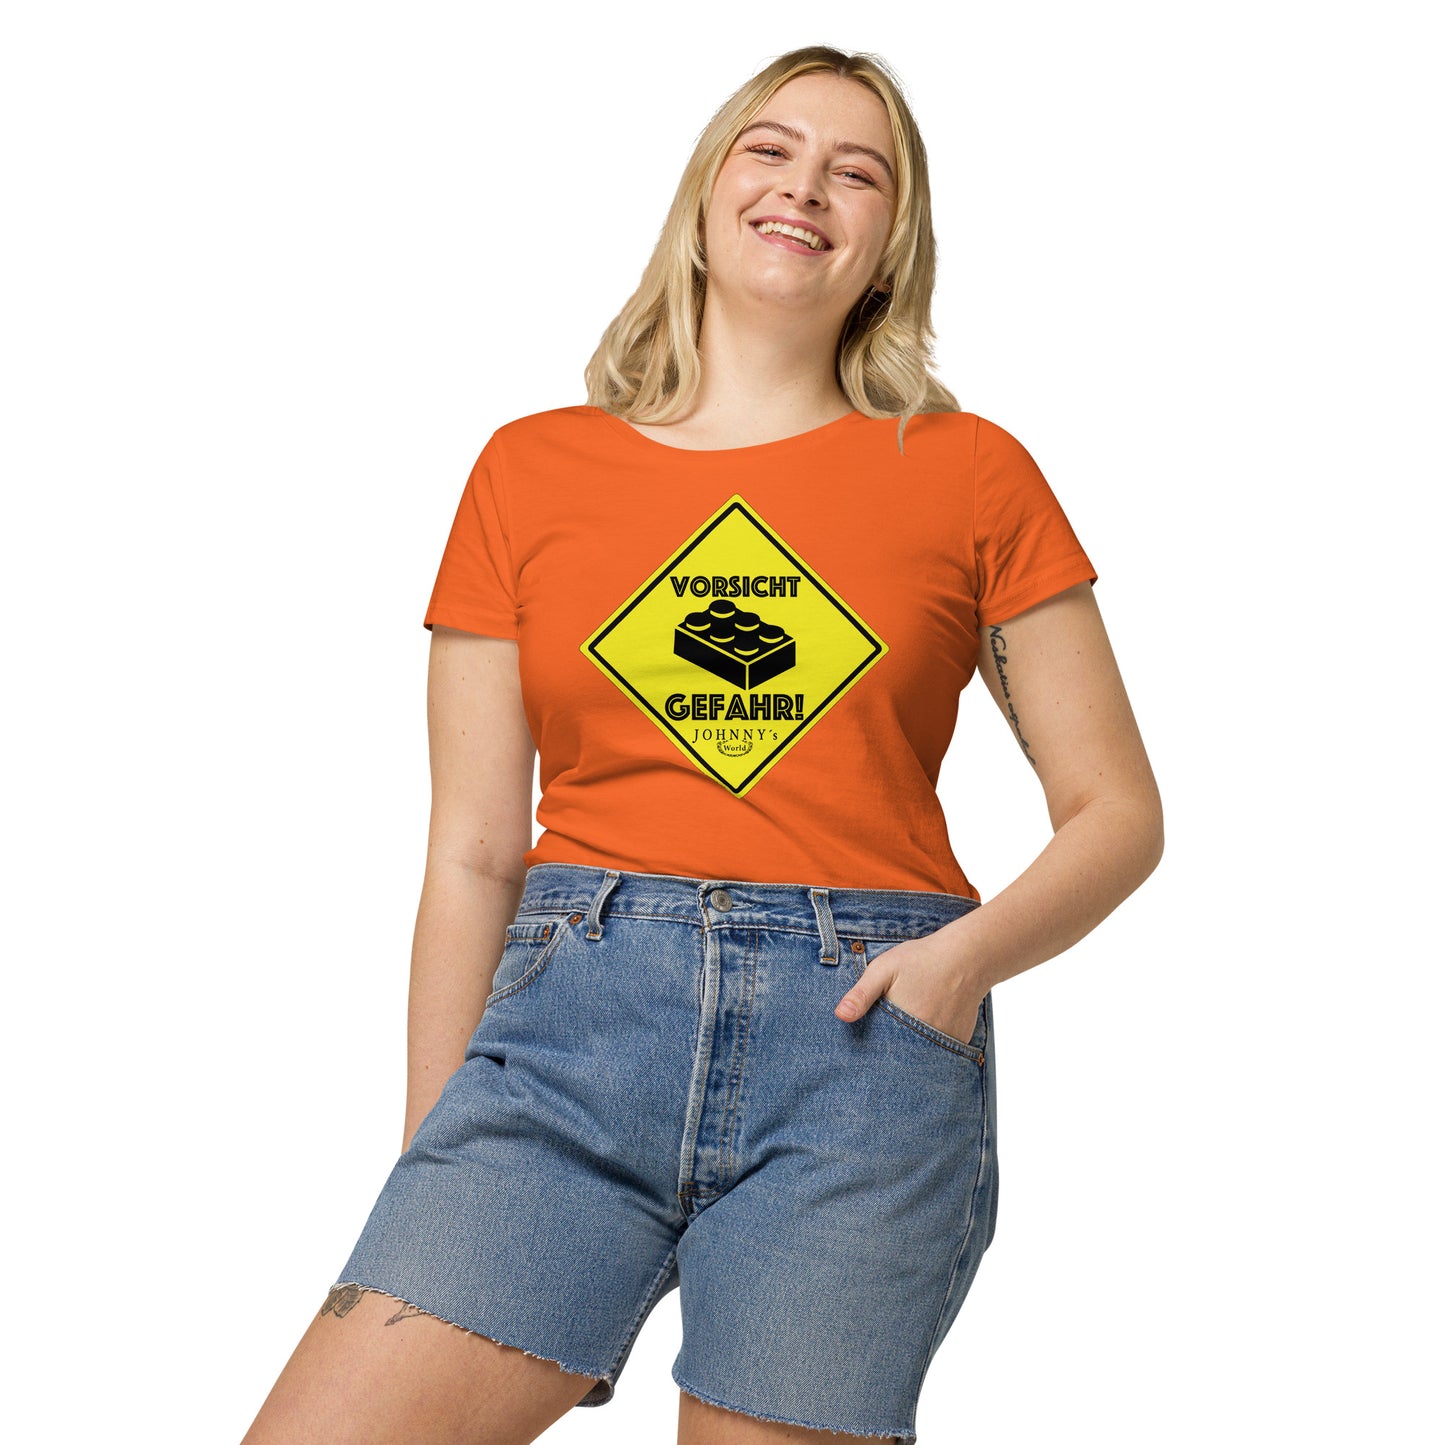 "Vorsicht Gefahr" Mädels T-Shirt